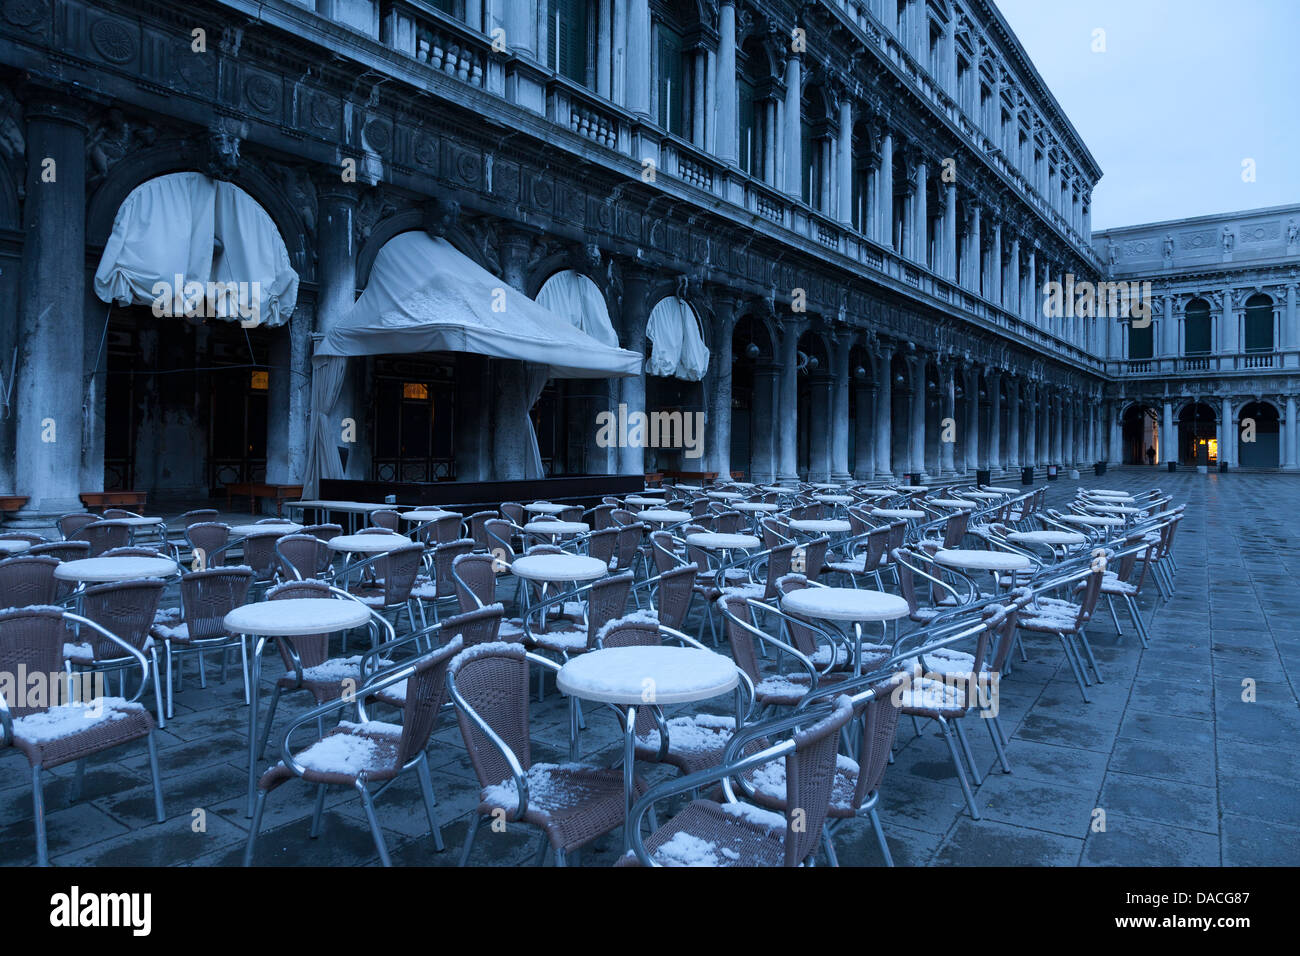 Piazza San Marco, all'alba, Venezia, Italia Foto Stock